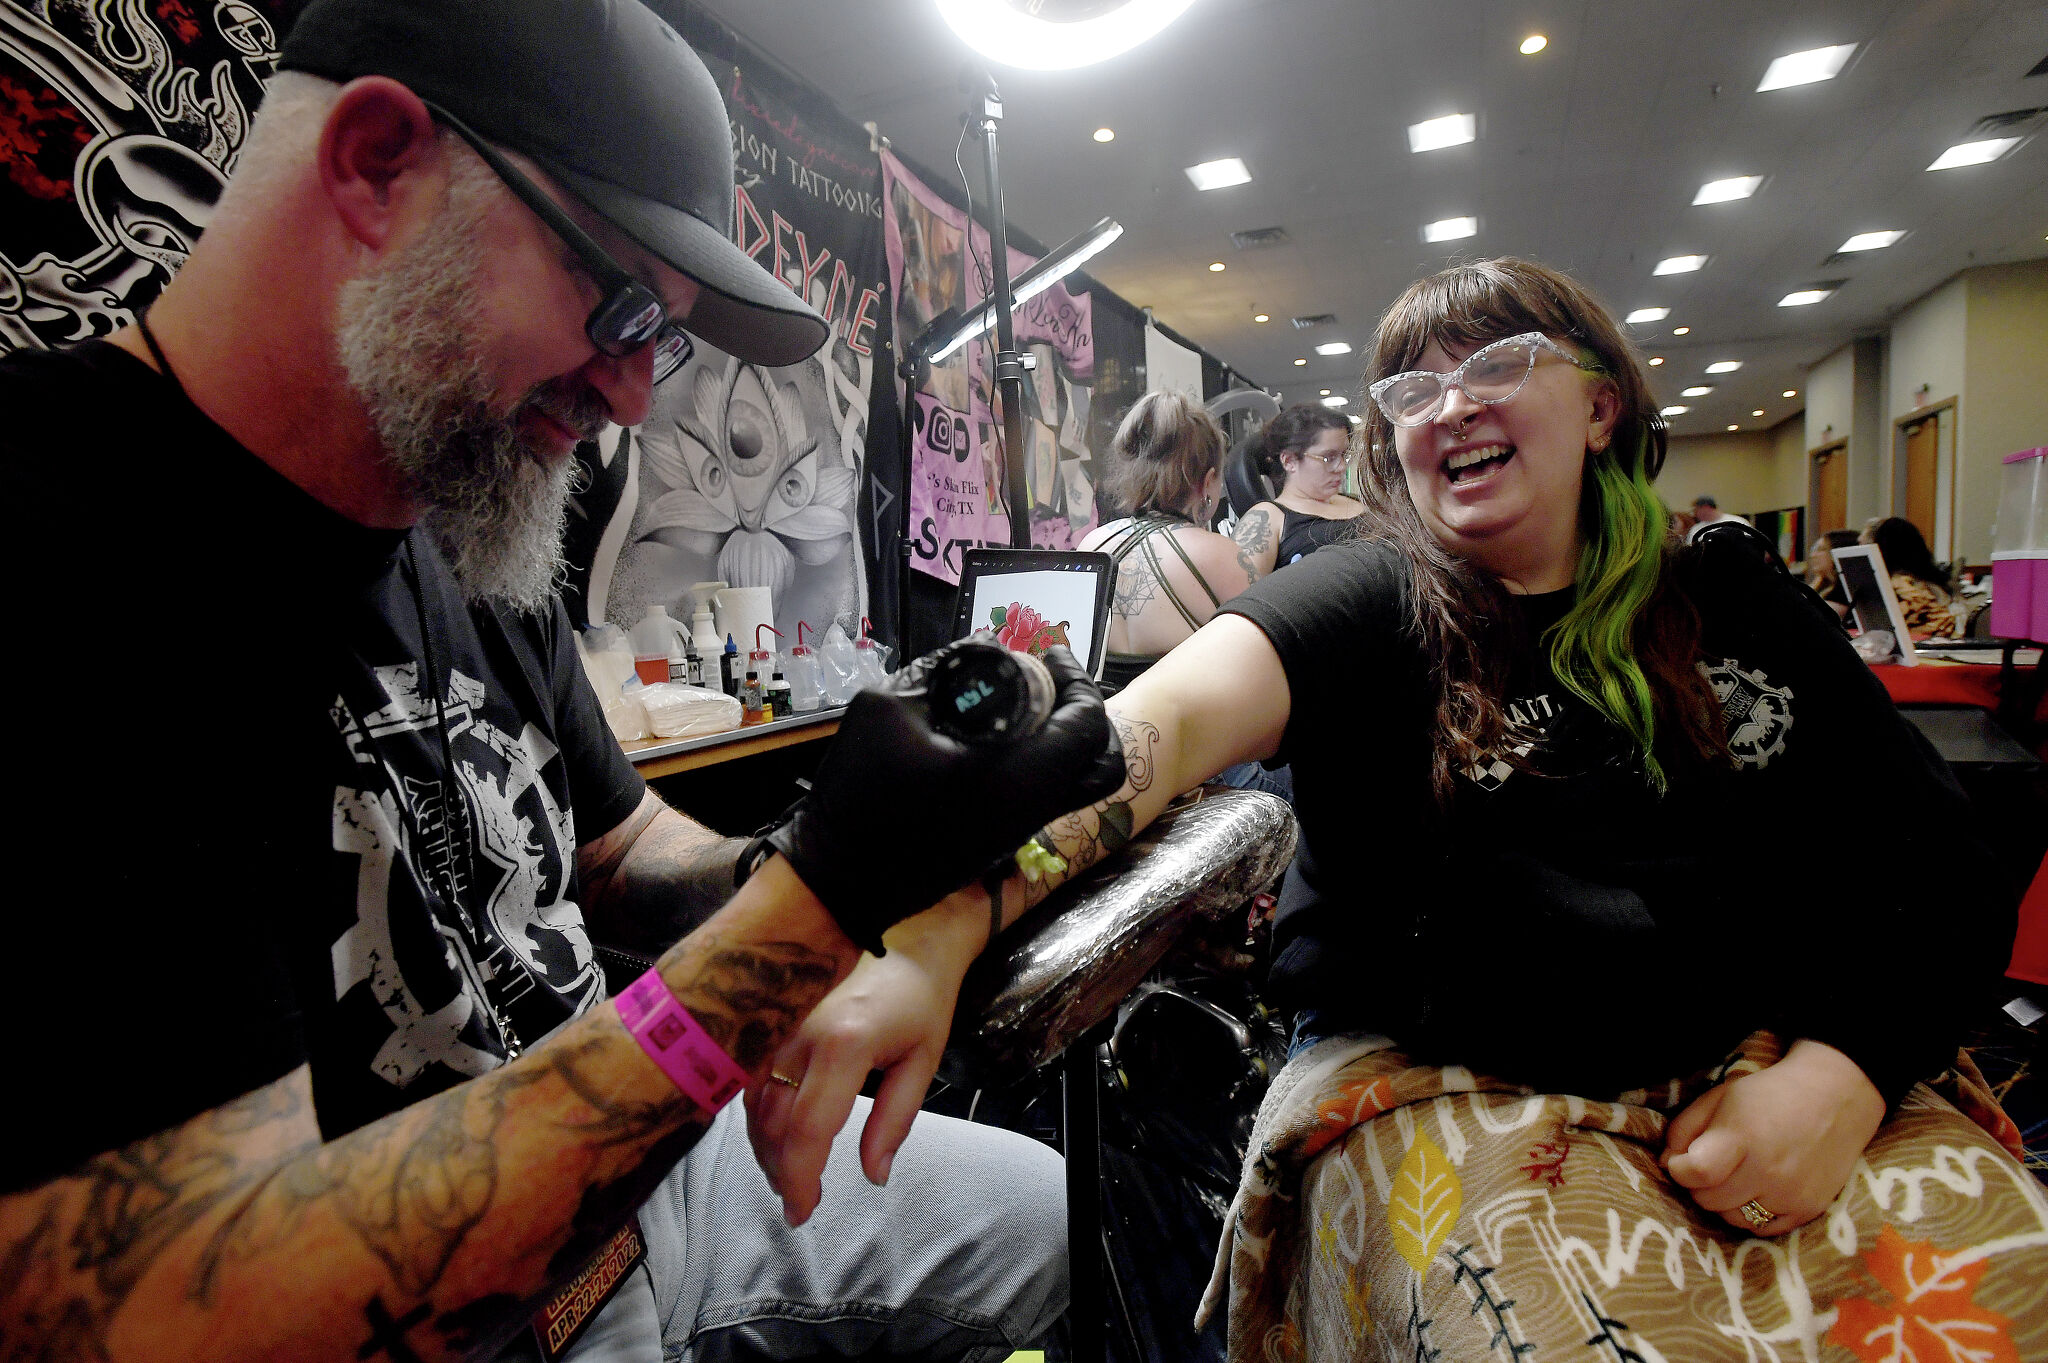 Atlanta Tattoo Arts Convention 2019 | Villain Arts - YouTube